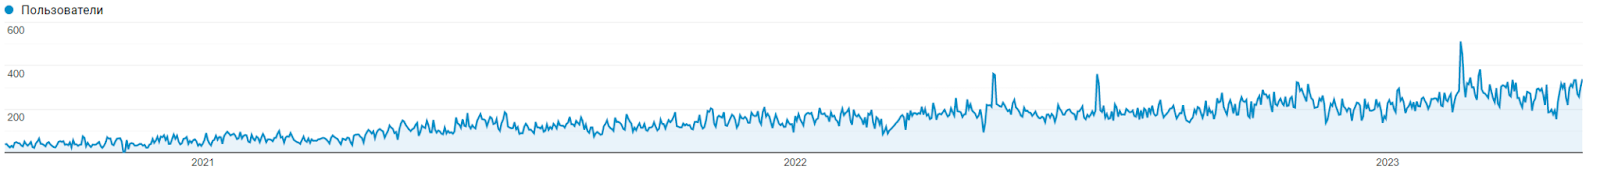 Динаміка трафіку блогу з 1 вересня 2020 по 1 травня 2023 р.